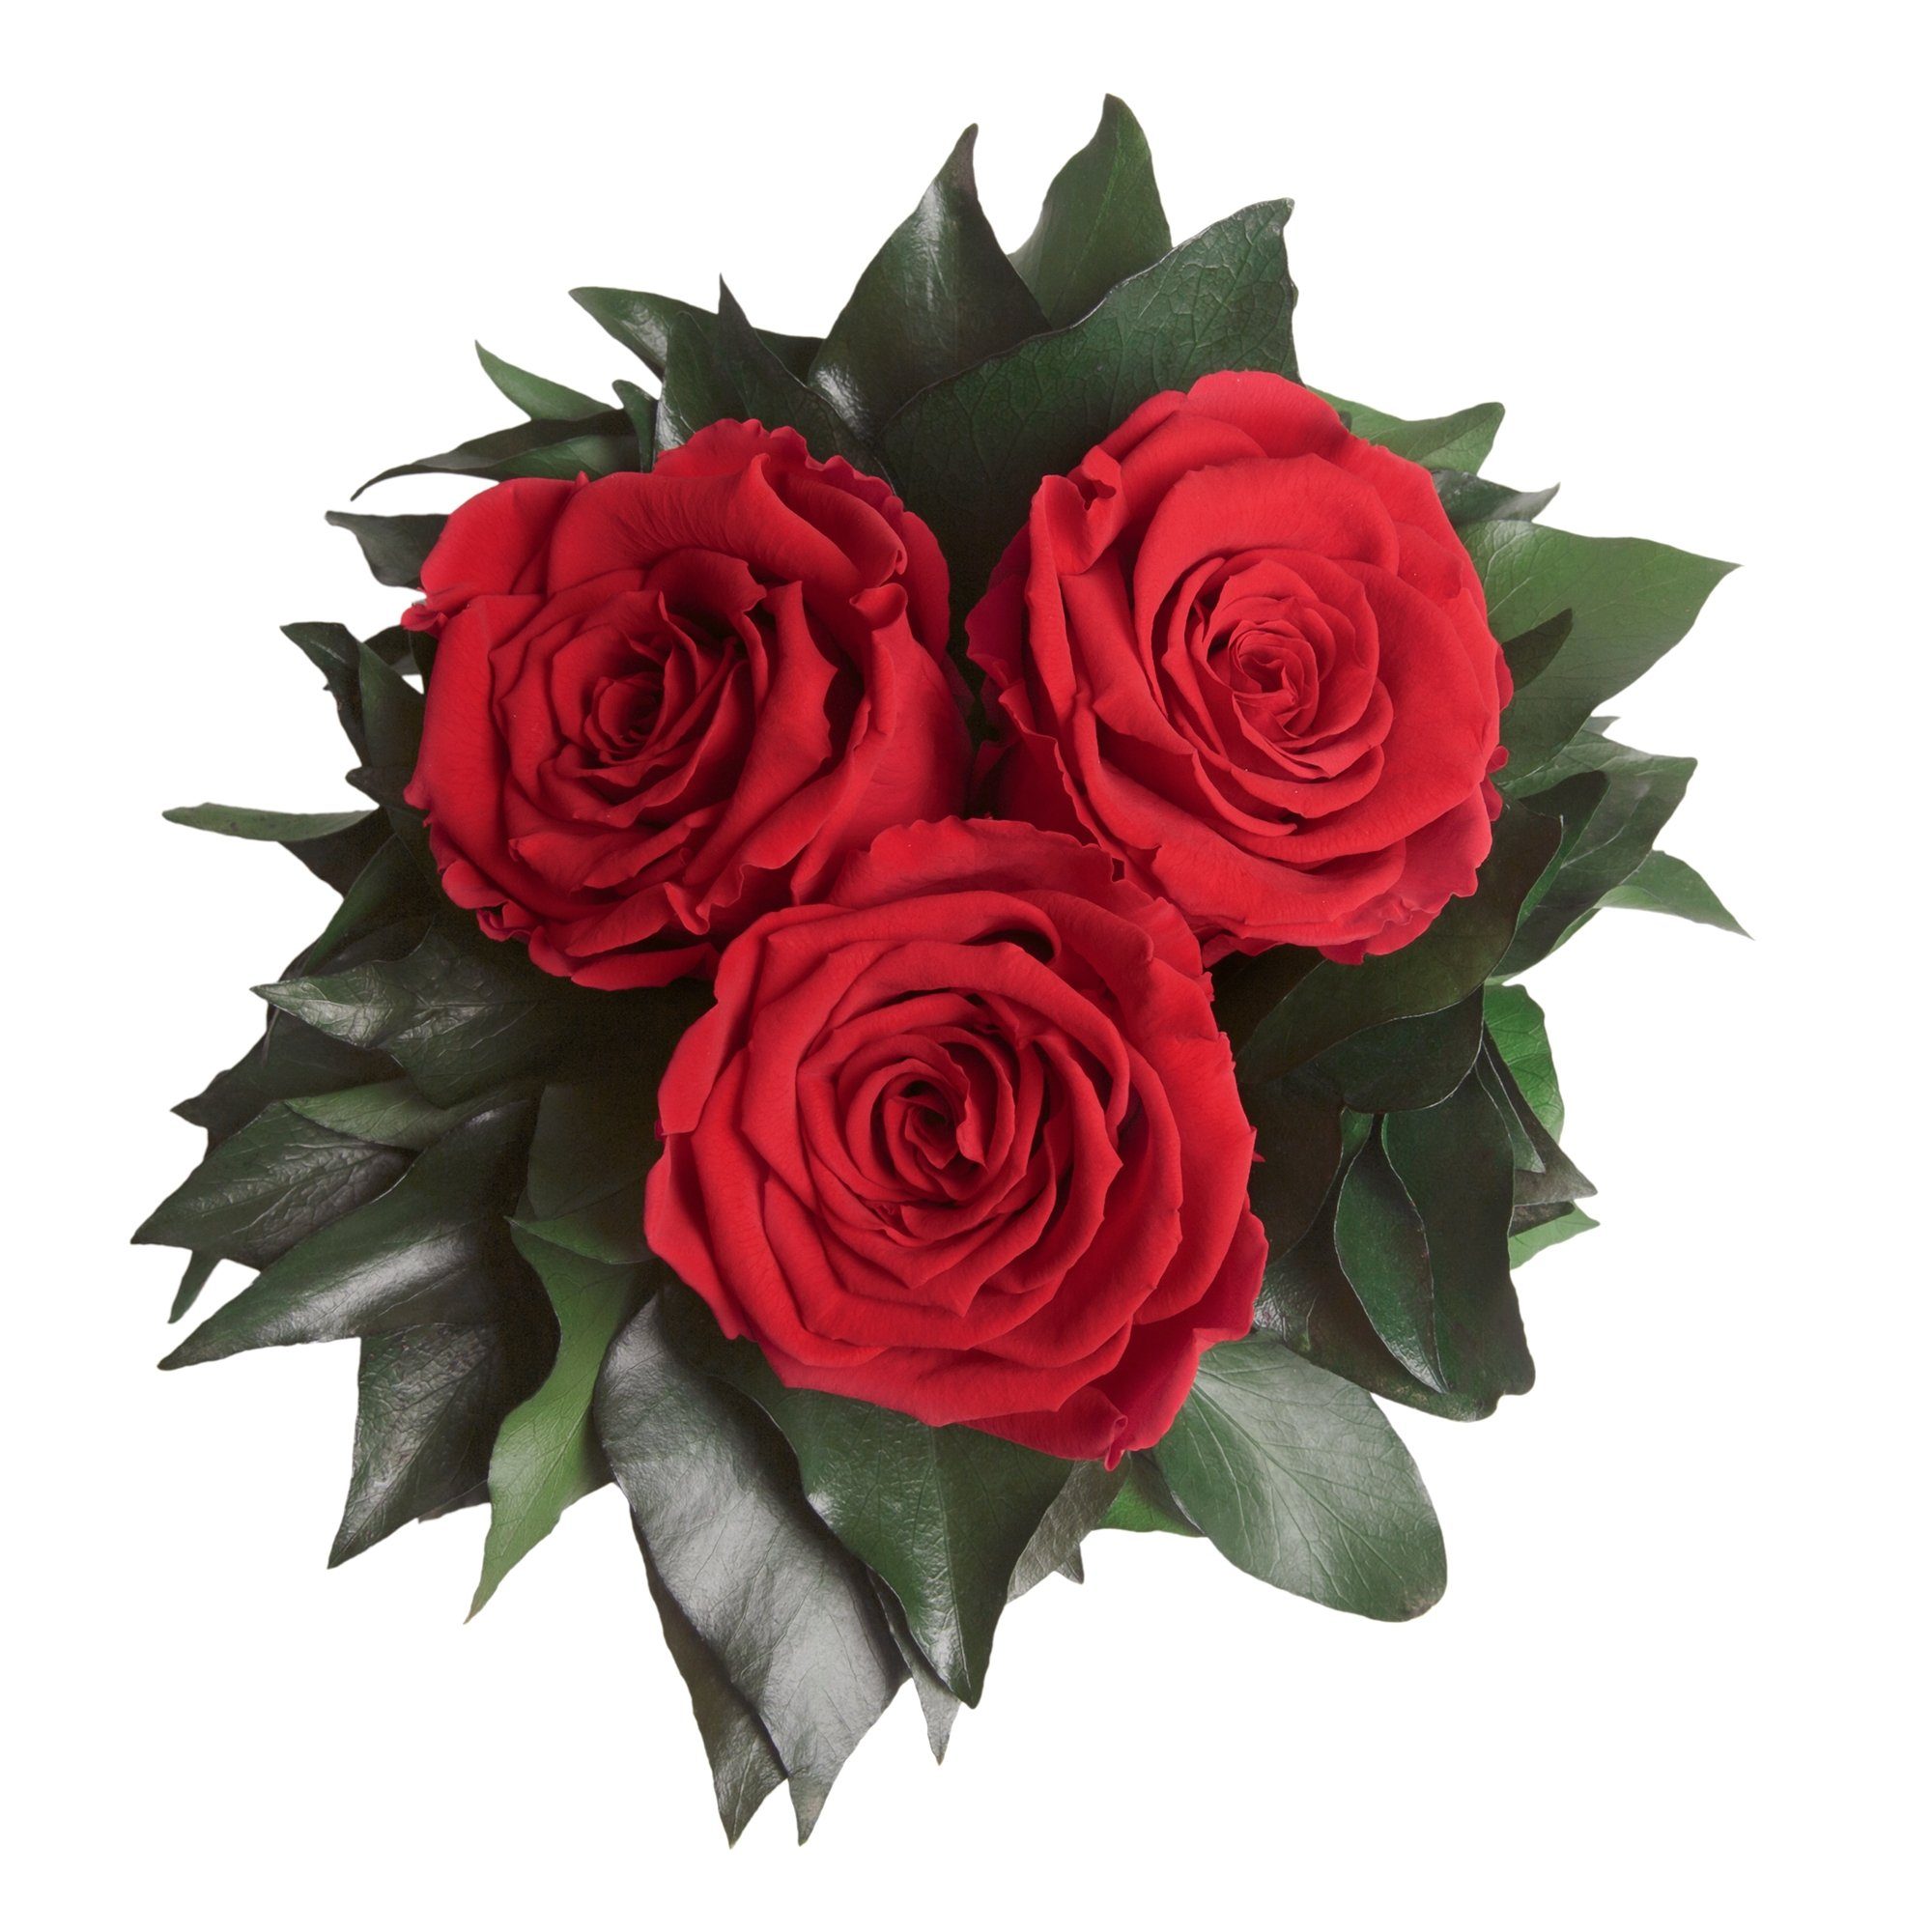 Kunstorchidee 3 Infinity Rot bis SCHULZ 15 Rose, silberfarbene ROSEMARIE haltbar Jahre cm, Wohnzimmer Vase Heidelberg, Höhe 3 zu Deko Blumenstrauß Rose Rosen